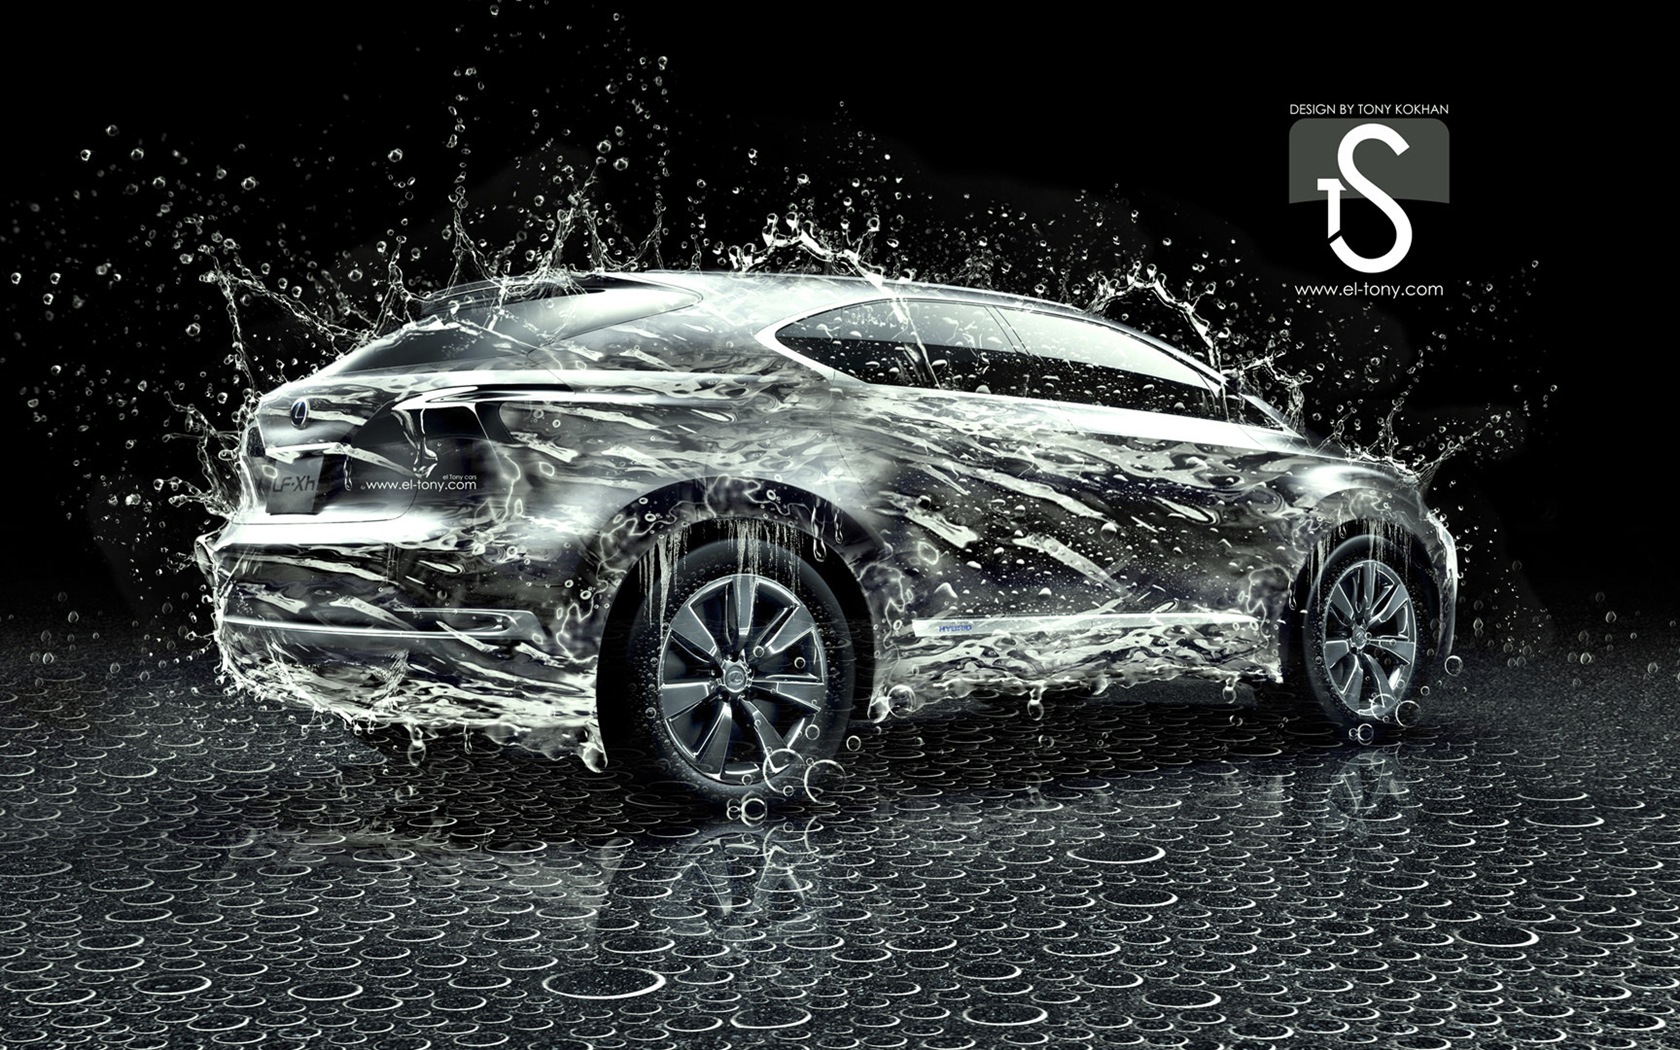 물 방울 스플래시, 아름다운 차 크리 에이 티브 디자인 배경 화면 #8 - 1680x1050